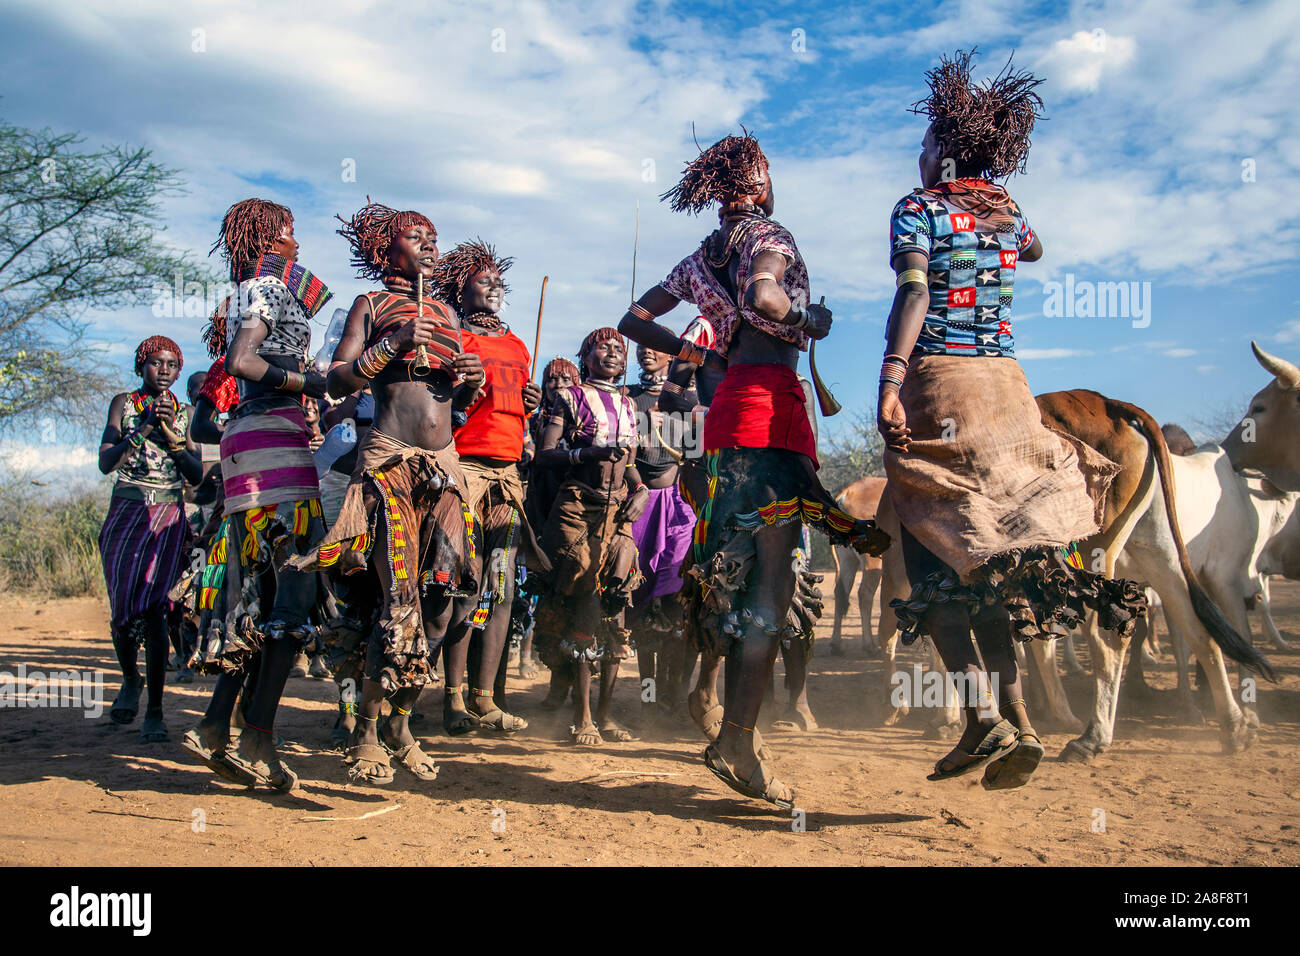 Les femmes de la tribu Hamar danser devant l'bull cérémonie saut près de Turmi Ethiopie Banque D'Images